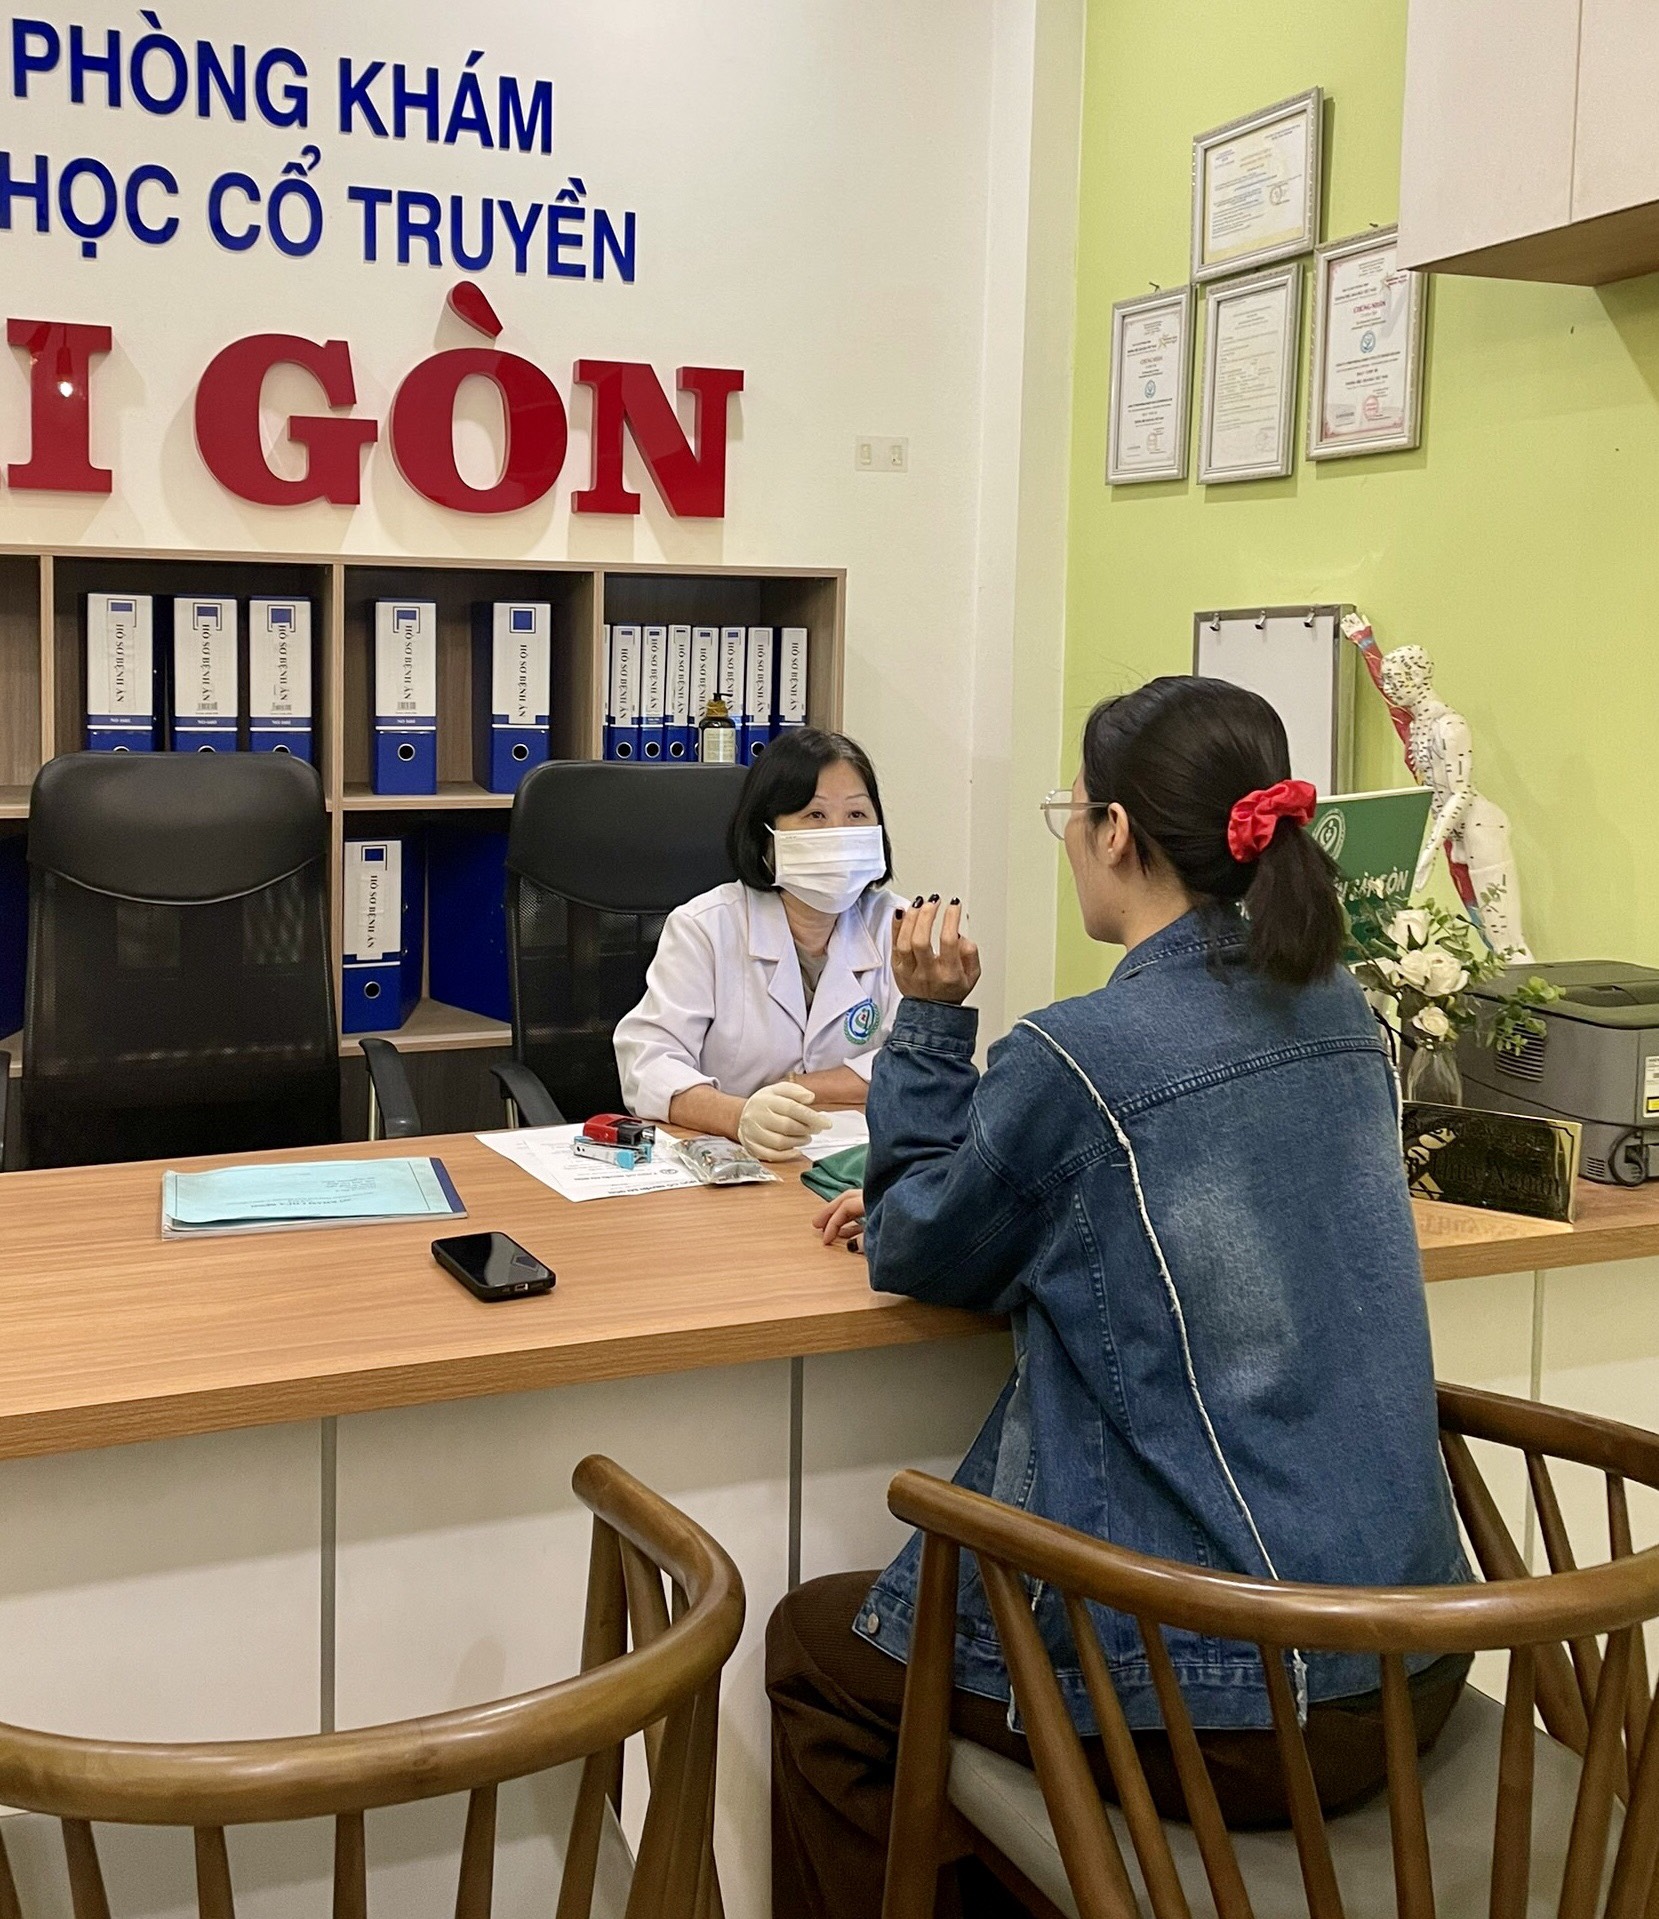 Phòng khám Y học cổ truyền Sài Gòn